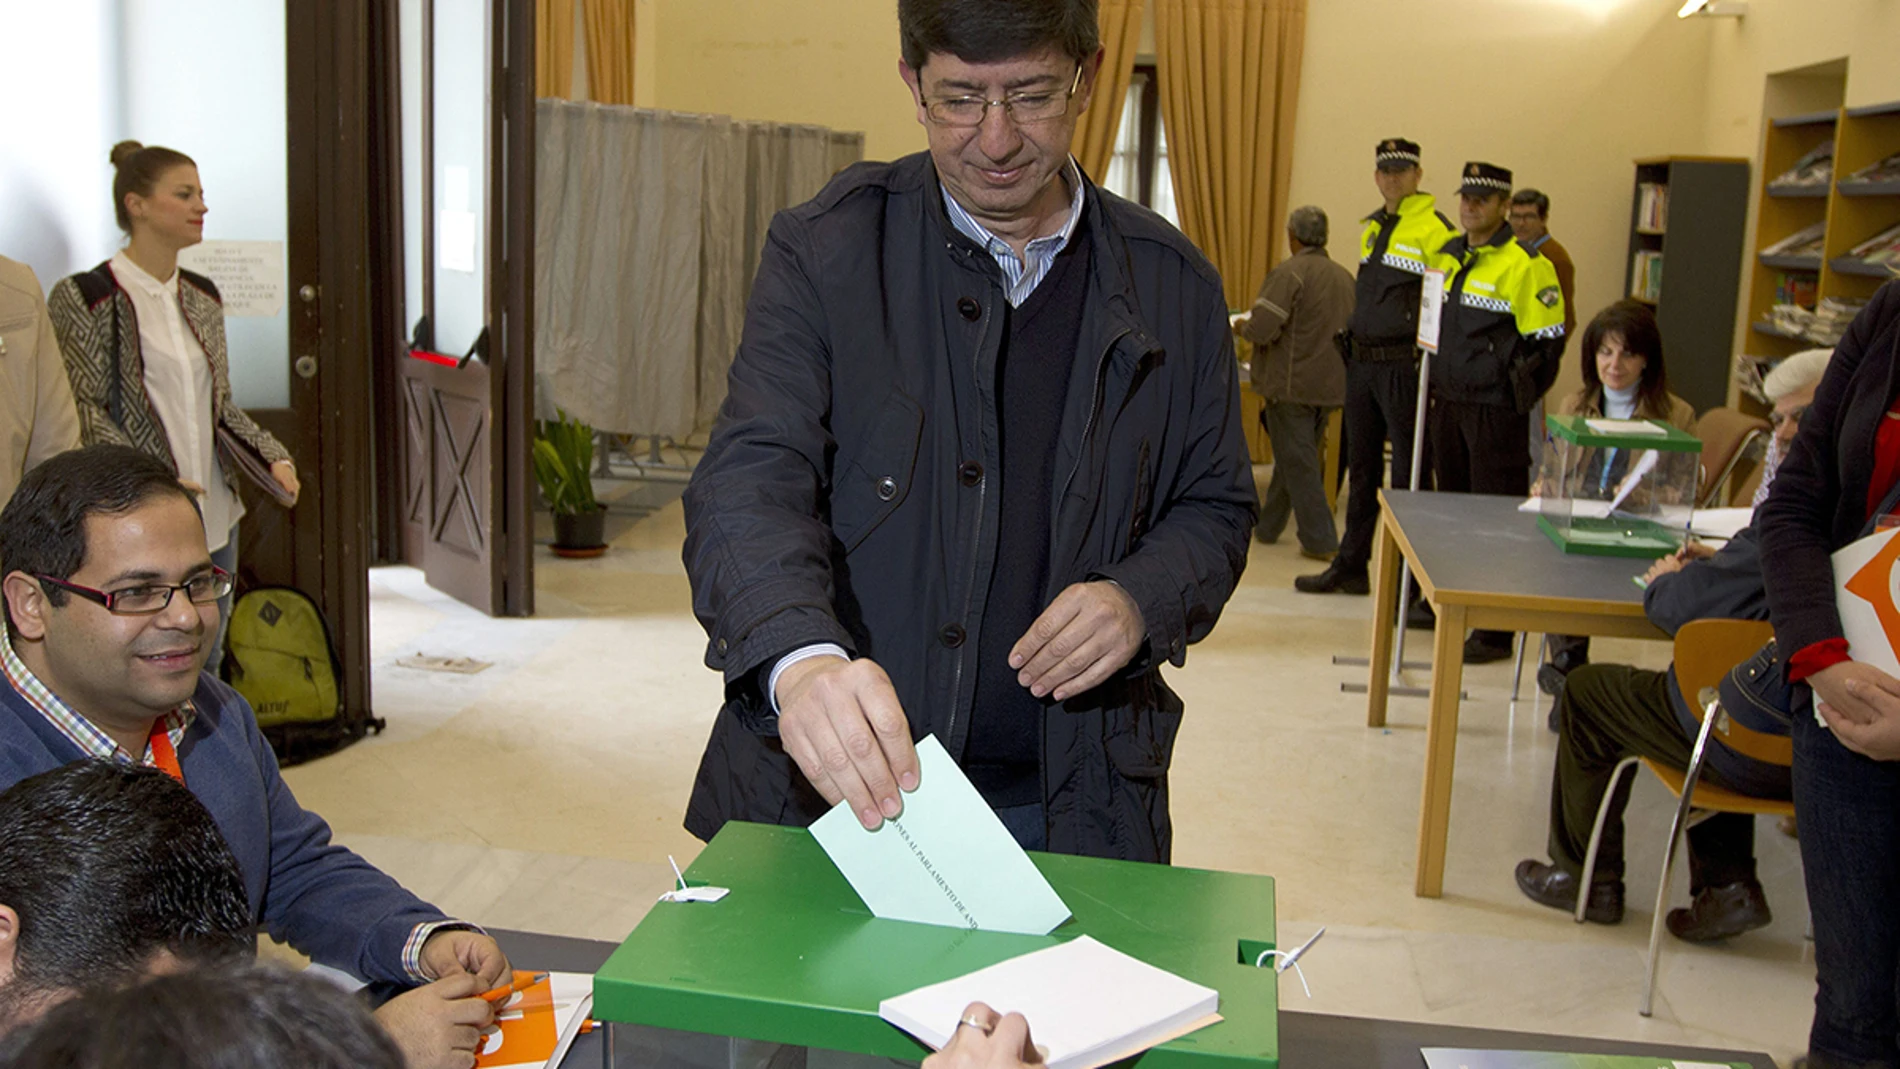 El candidato de Ciudadanos, Juan Marín, vota en Sanlúcar de Barrameda